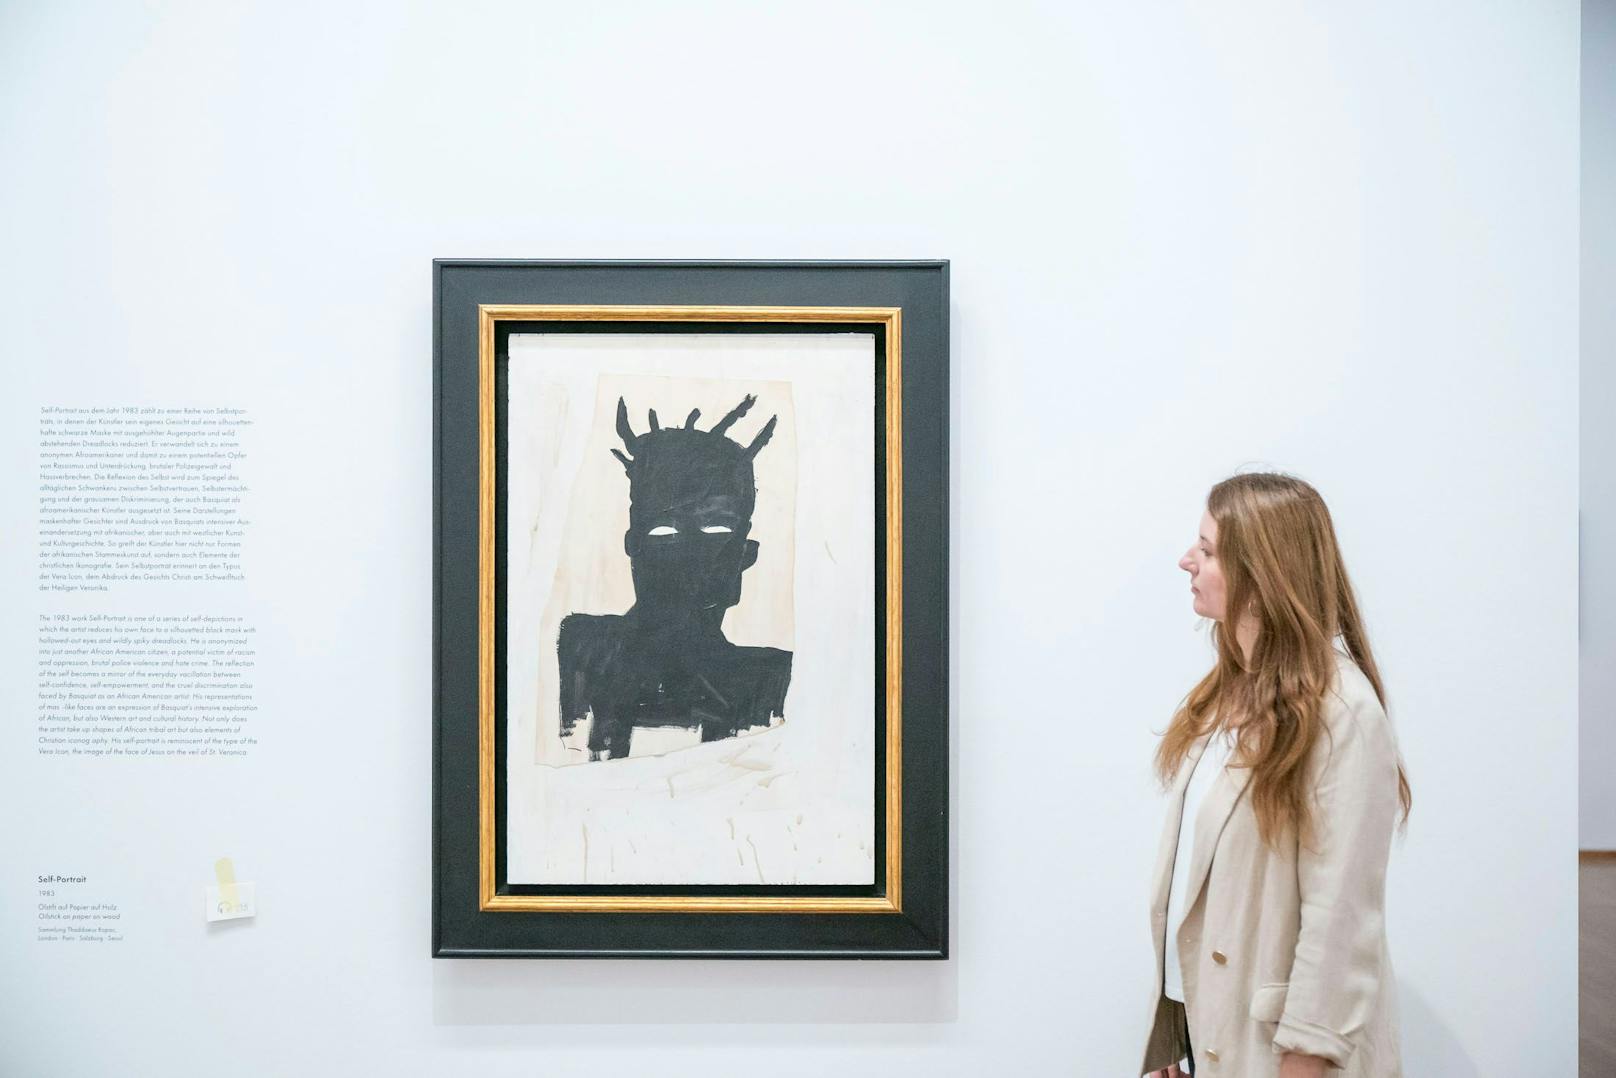 Eines der berühmten Selbstporträts von Jean-Michel Basquiat.